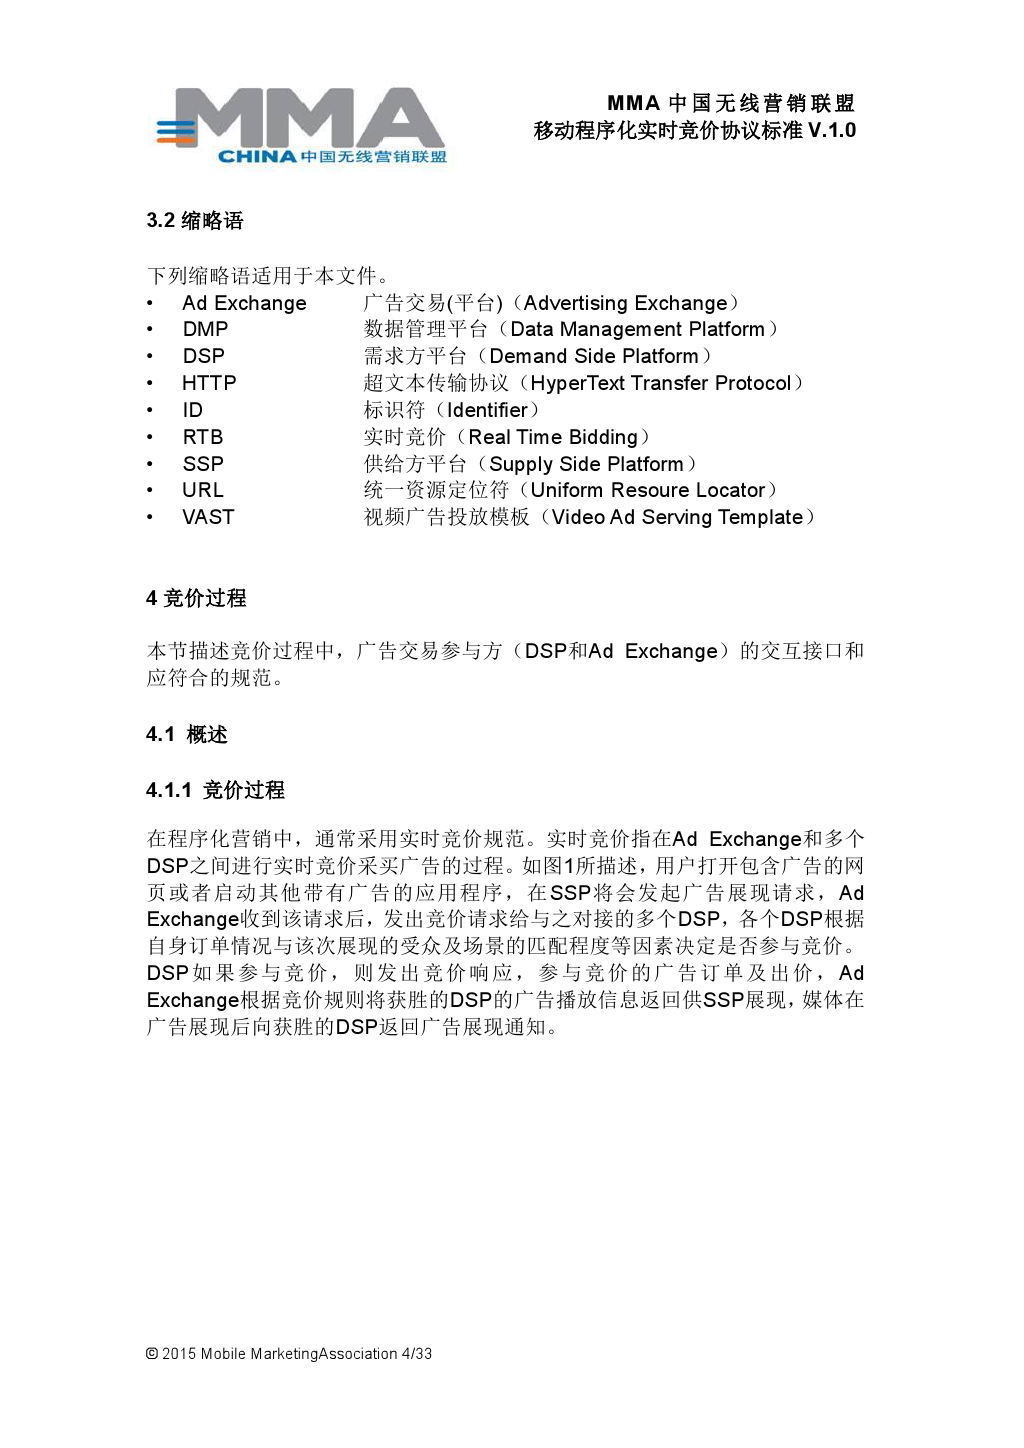 MMA中国无线营销联盟移动程序化实时竞价协议标准V.1.0_000005